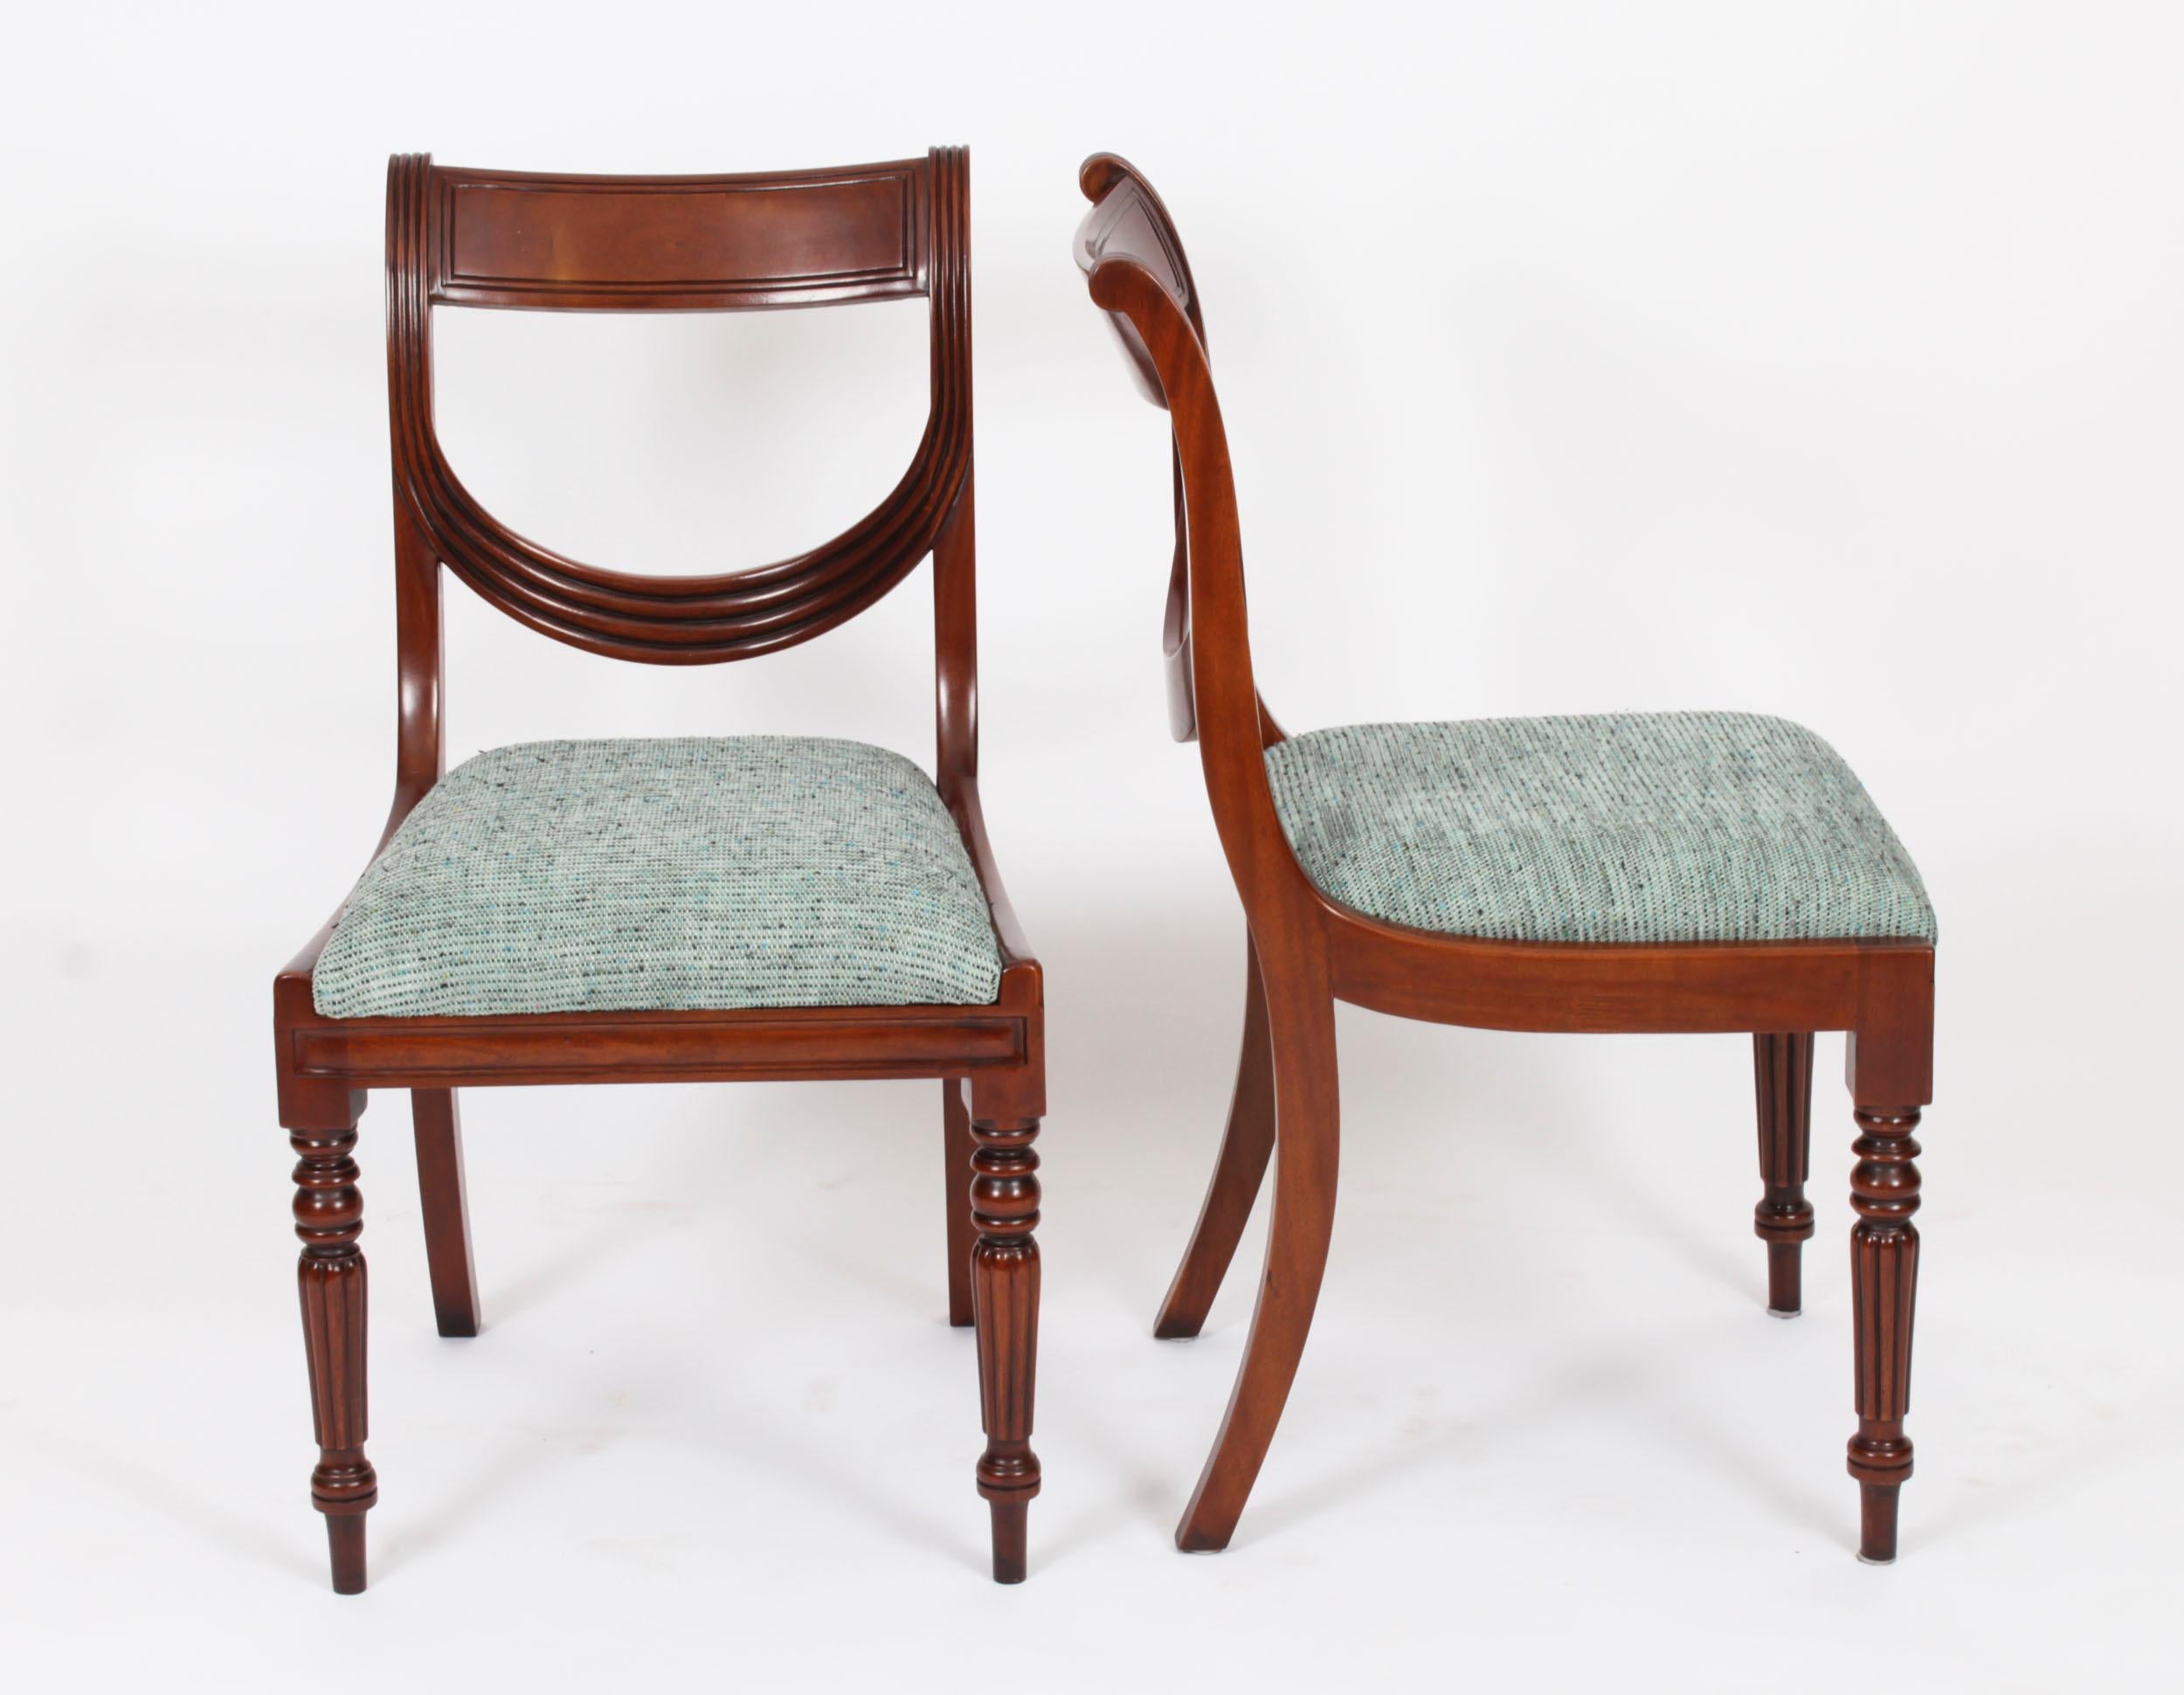 Ein entzückendes Vintage-Set von zehn  prächtige Esszimmerstühle mit Rückenlehne, aus der zweiten Hälfte  des 20. Jahrhunderts.

Die meisterhafte Verarbeitung von massivem Mahagoni und die Liebe zum Detail sind wirklich atemberaubend.

Das Set